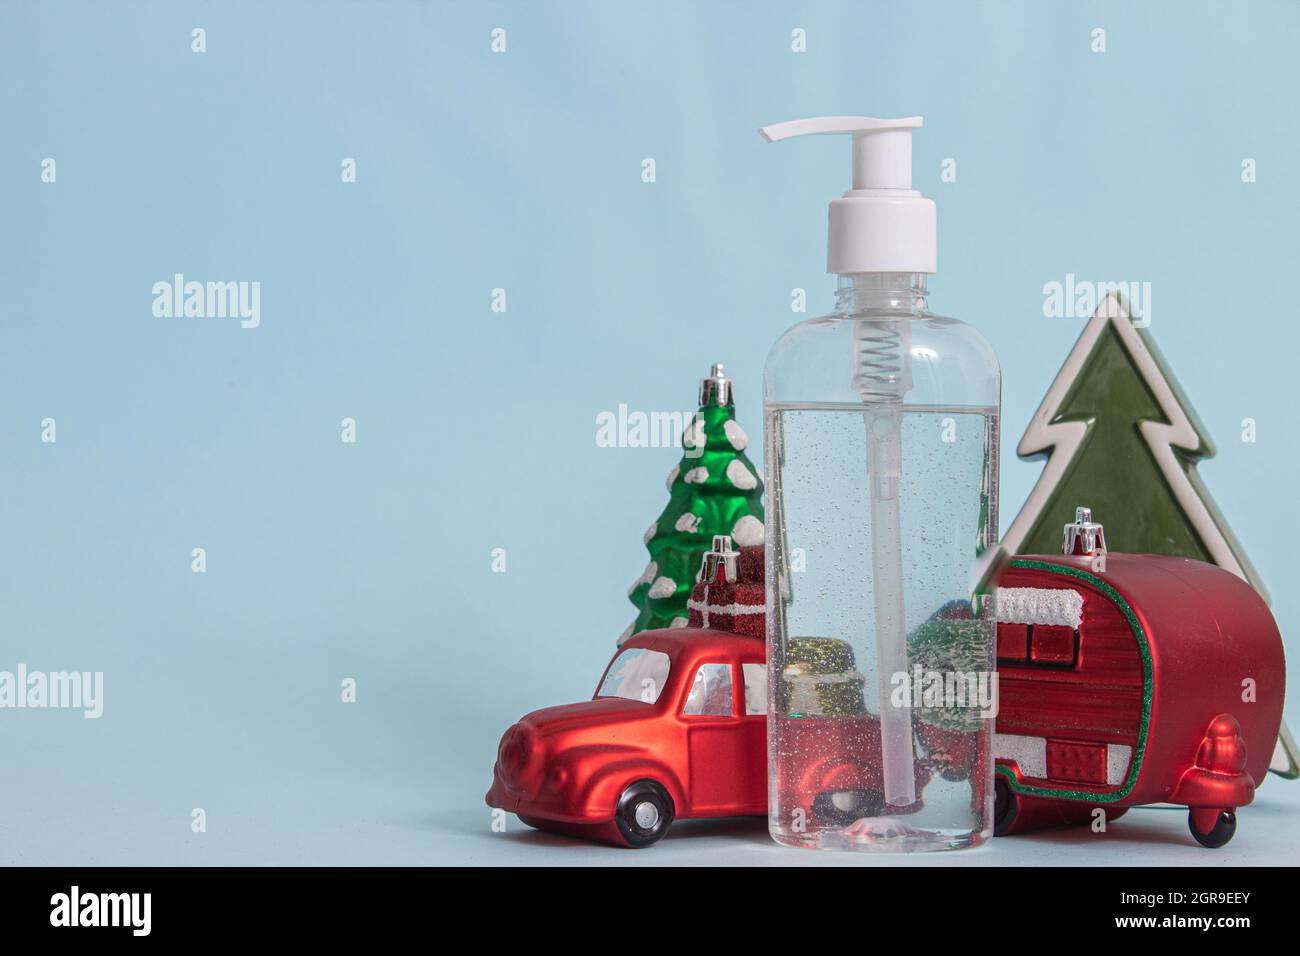 Figurine di Natale e un disinfettante per le mani isolato su sfondo blu Foto Stock